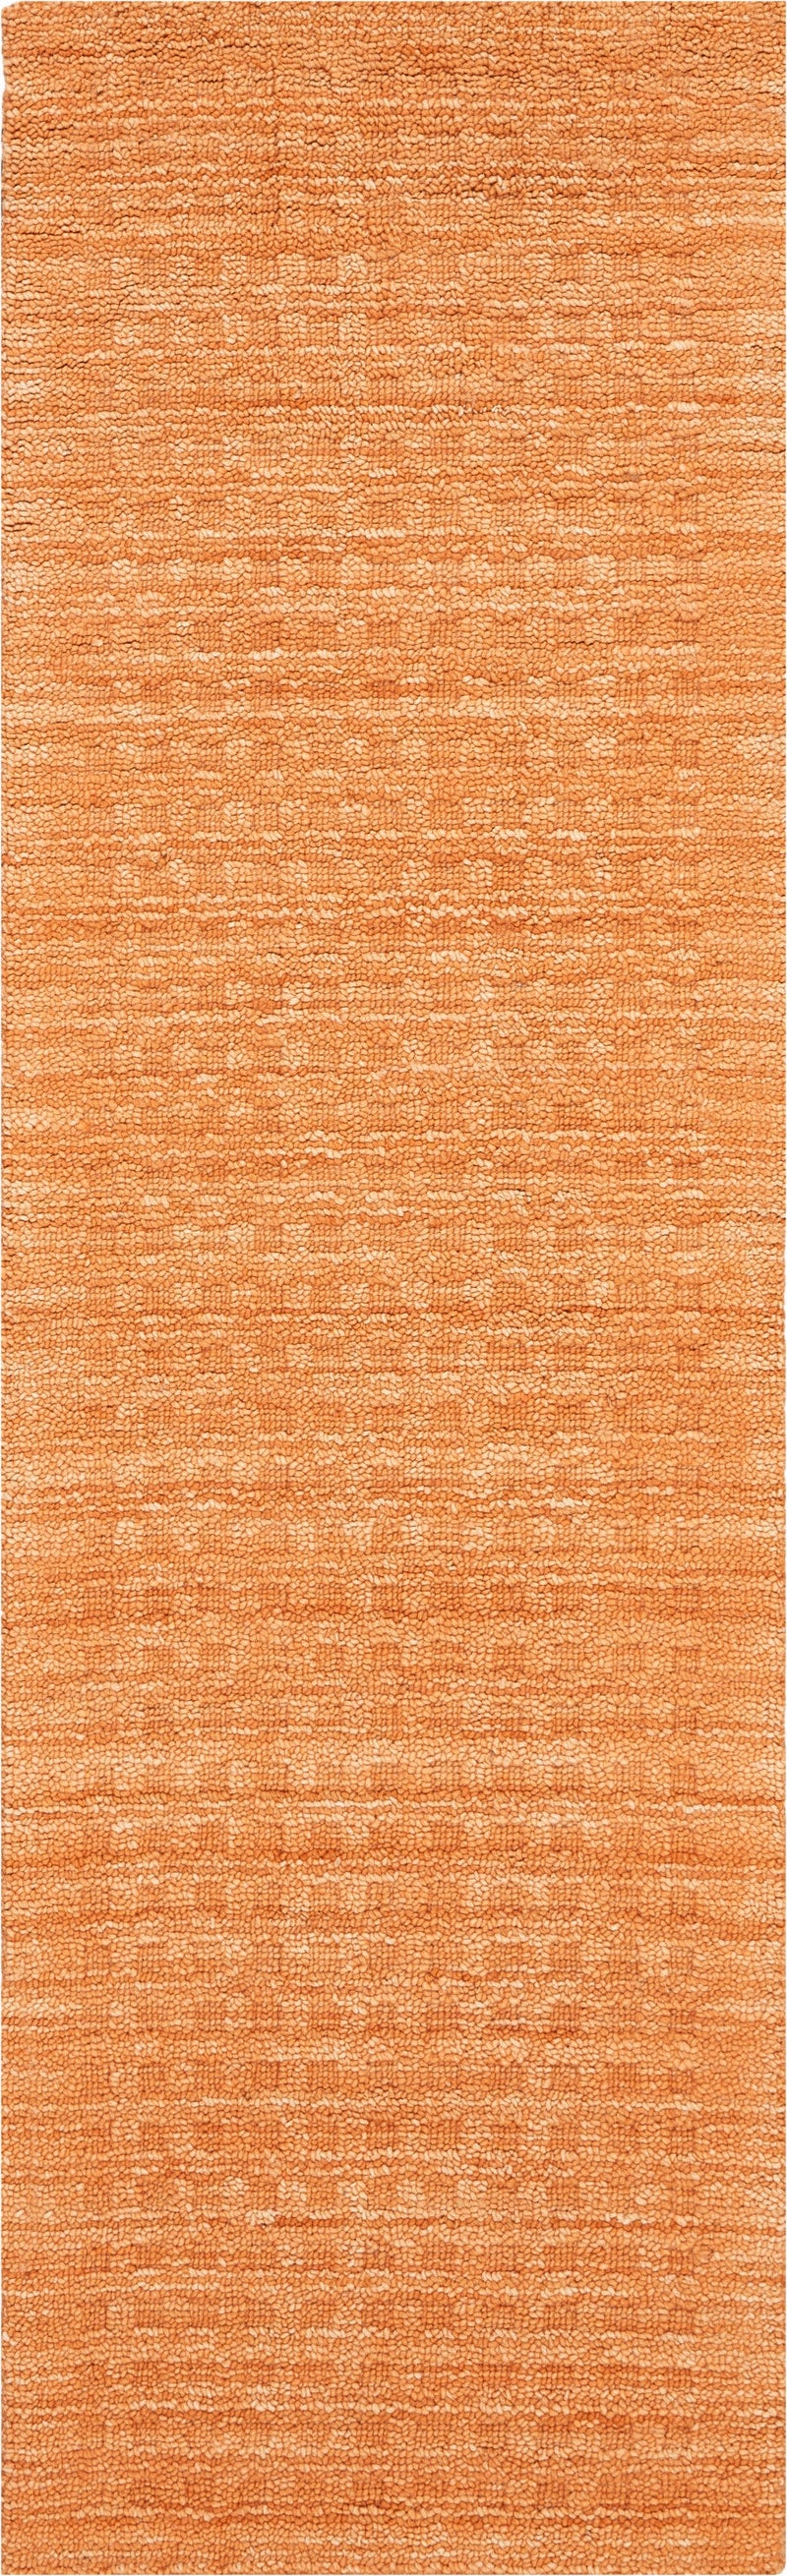 media image for marana handmade sunset rug by nourison 99446400604 redo 2 217